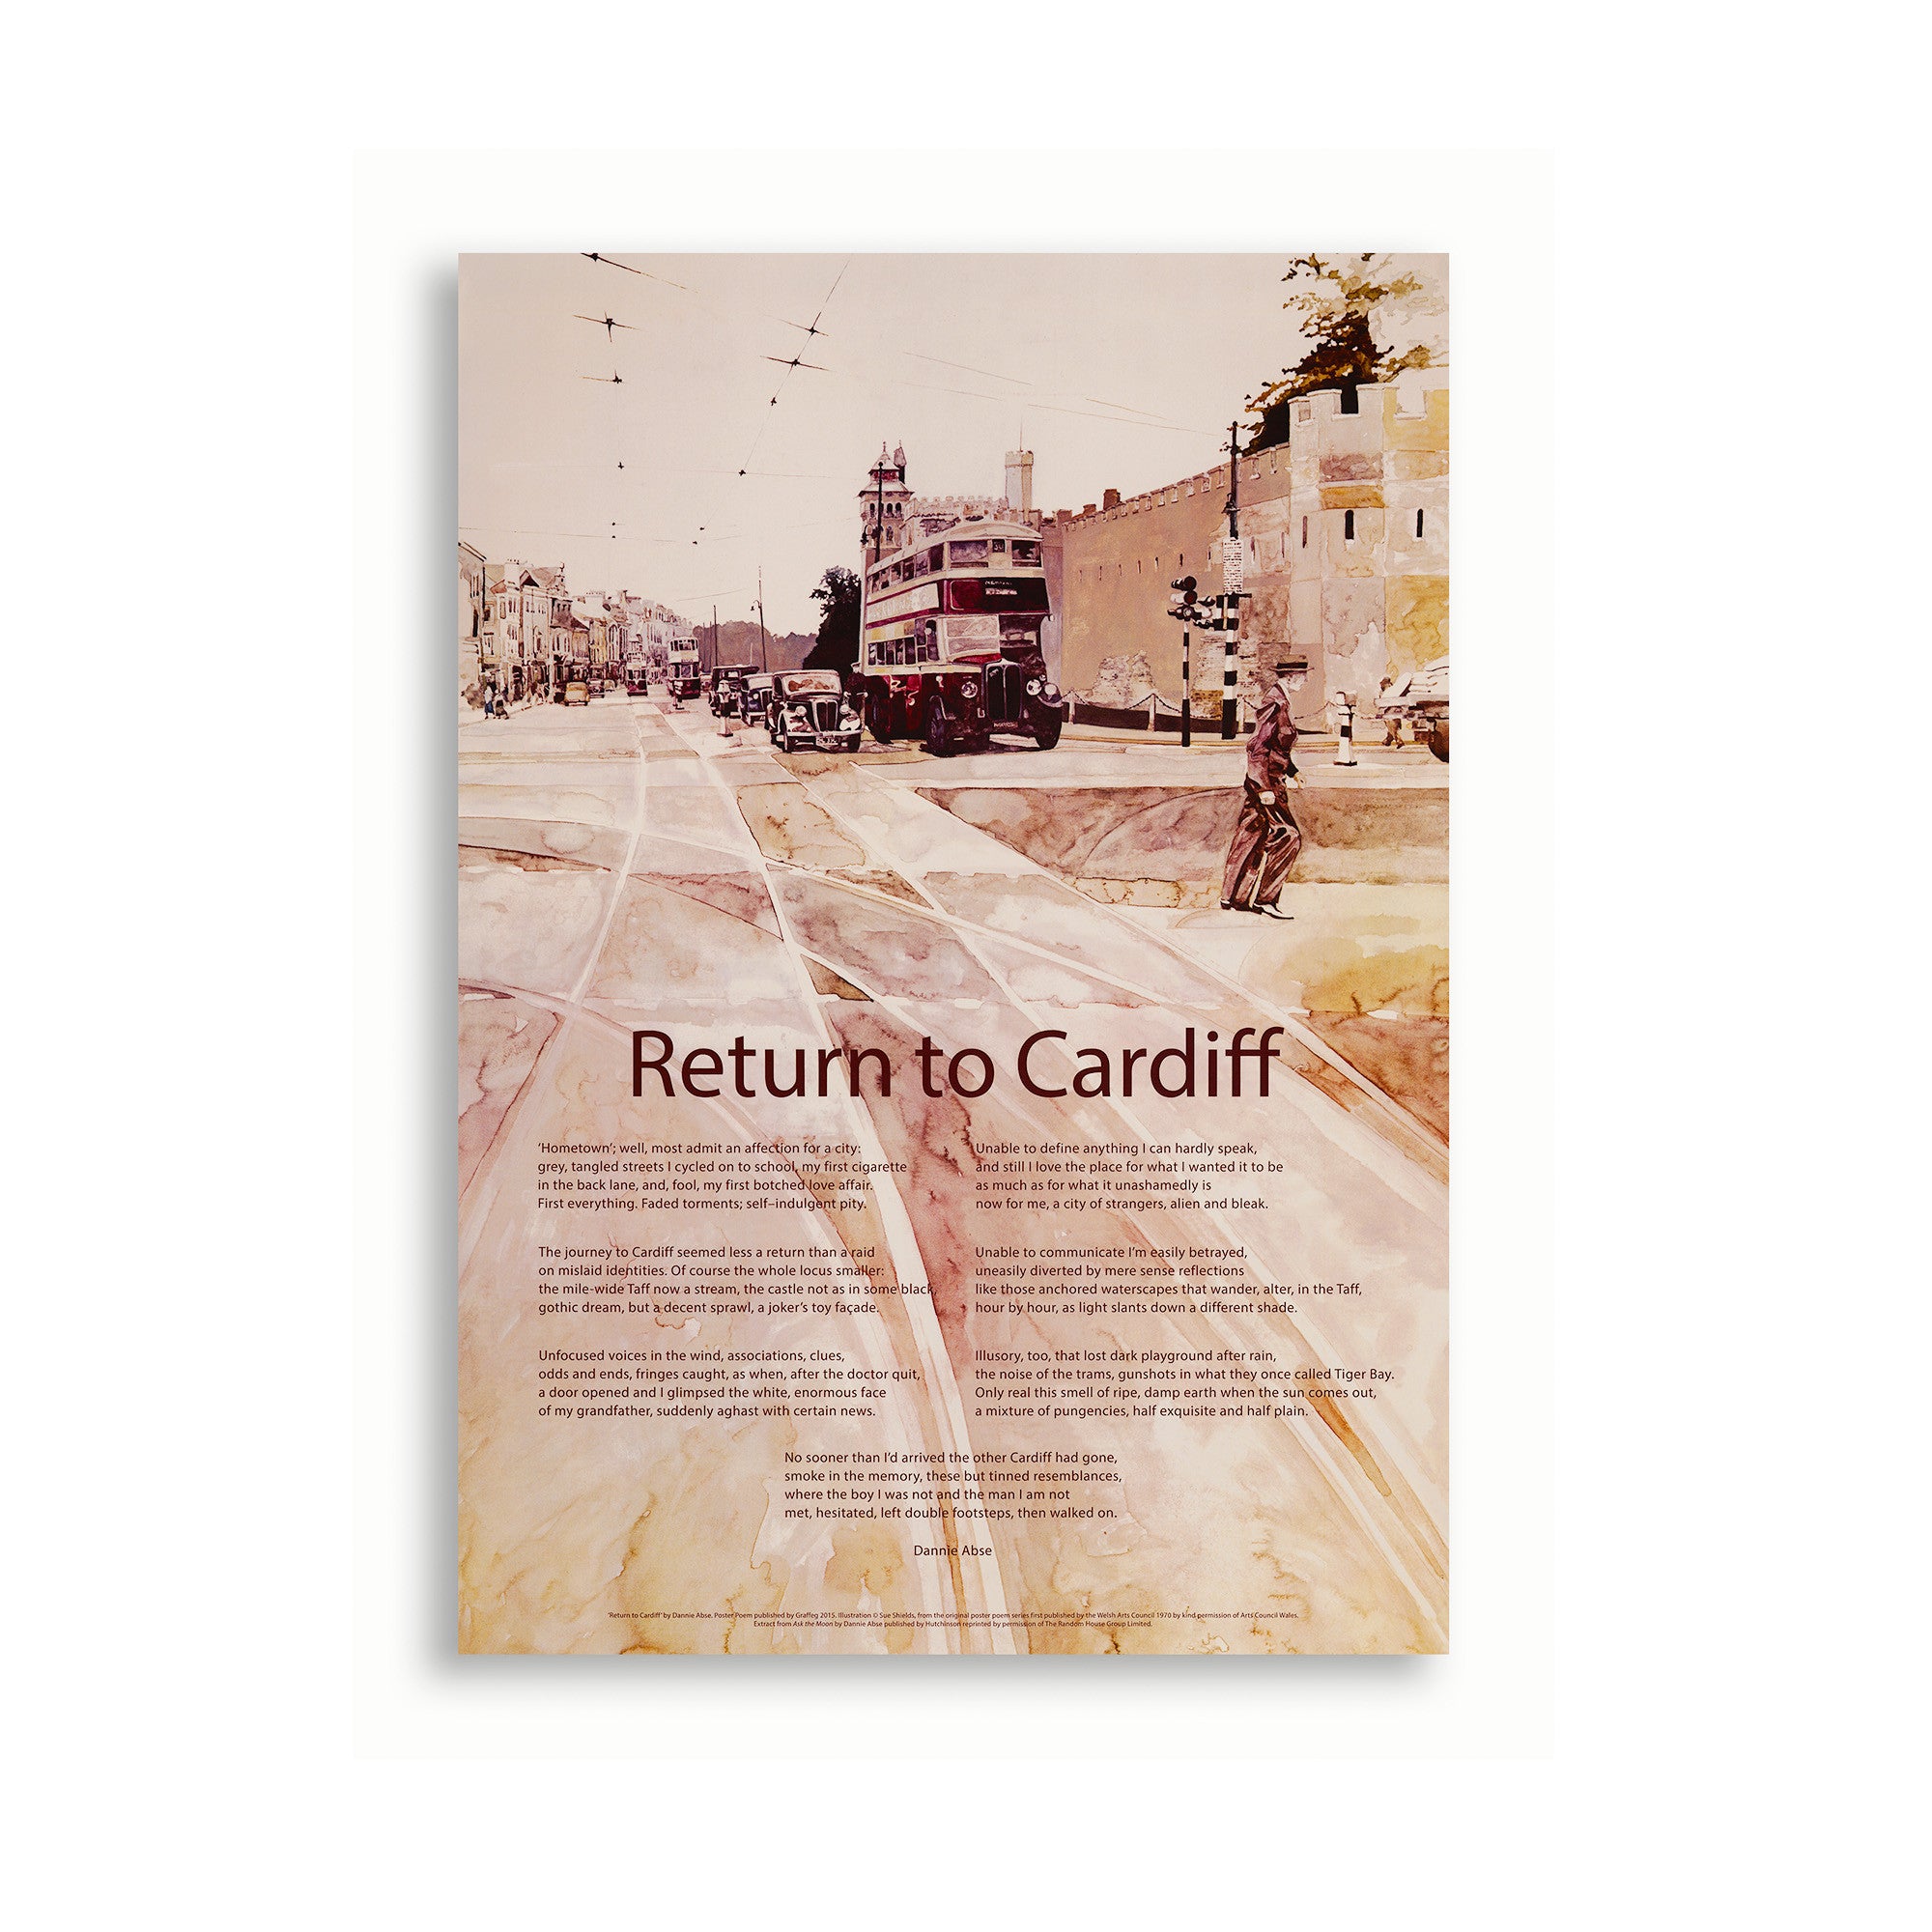 Return to Cardiff, Dannie Abse - Poster|Return to Cardiff, Dannie Abse - Poster - National Library of Wales Online Shop / Siop Arlein Llyfrgell Genedlaethol Cymru